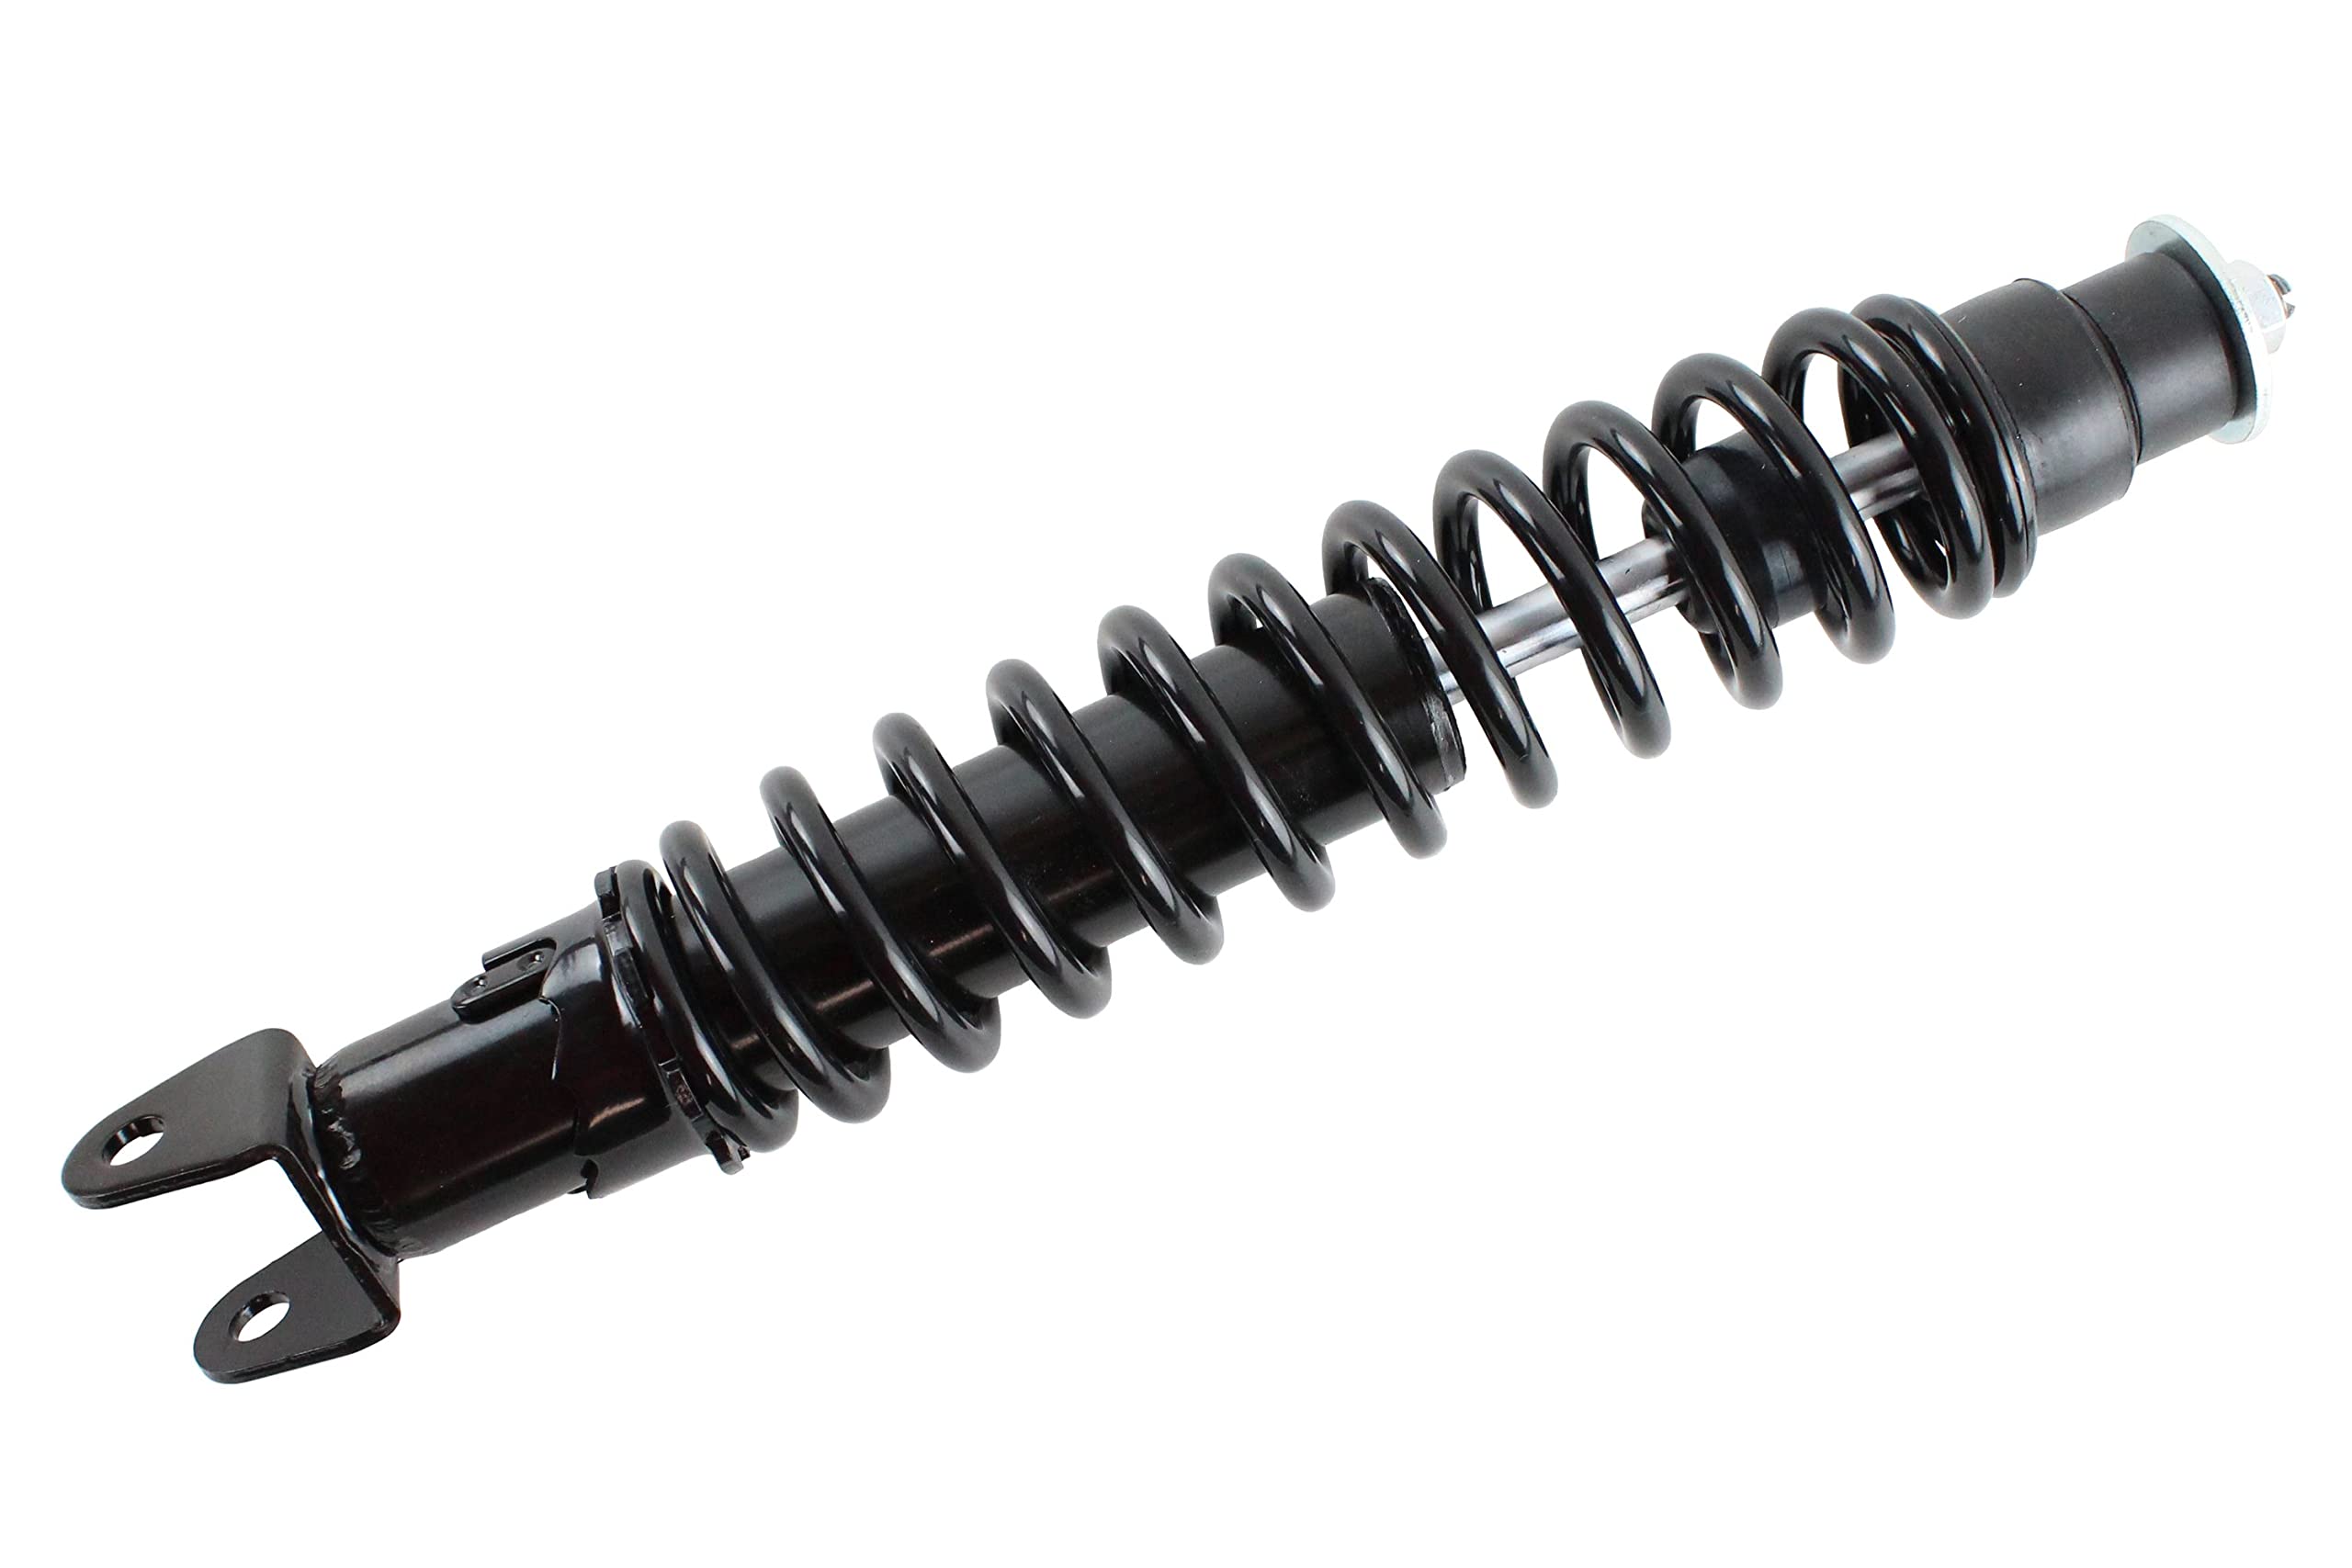 Stoßdämpfer Federbein 330mm, Farbe Schwarz, hydraulische Dämpfung für Roller wie Piaggio, Gilera, Vespa